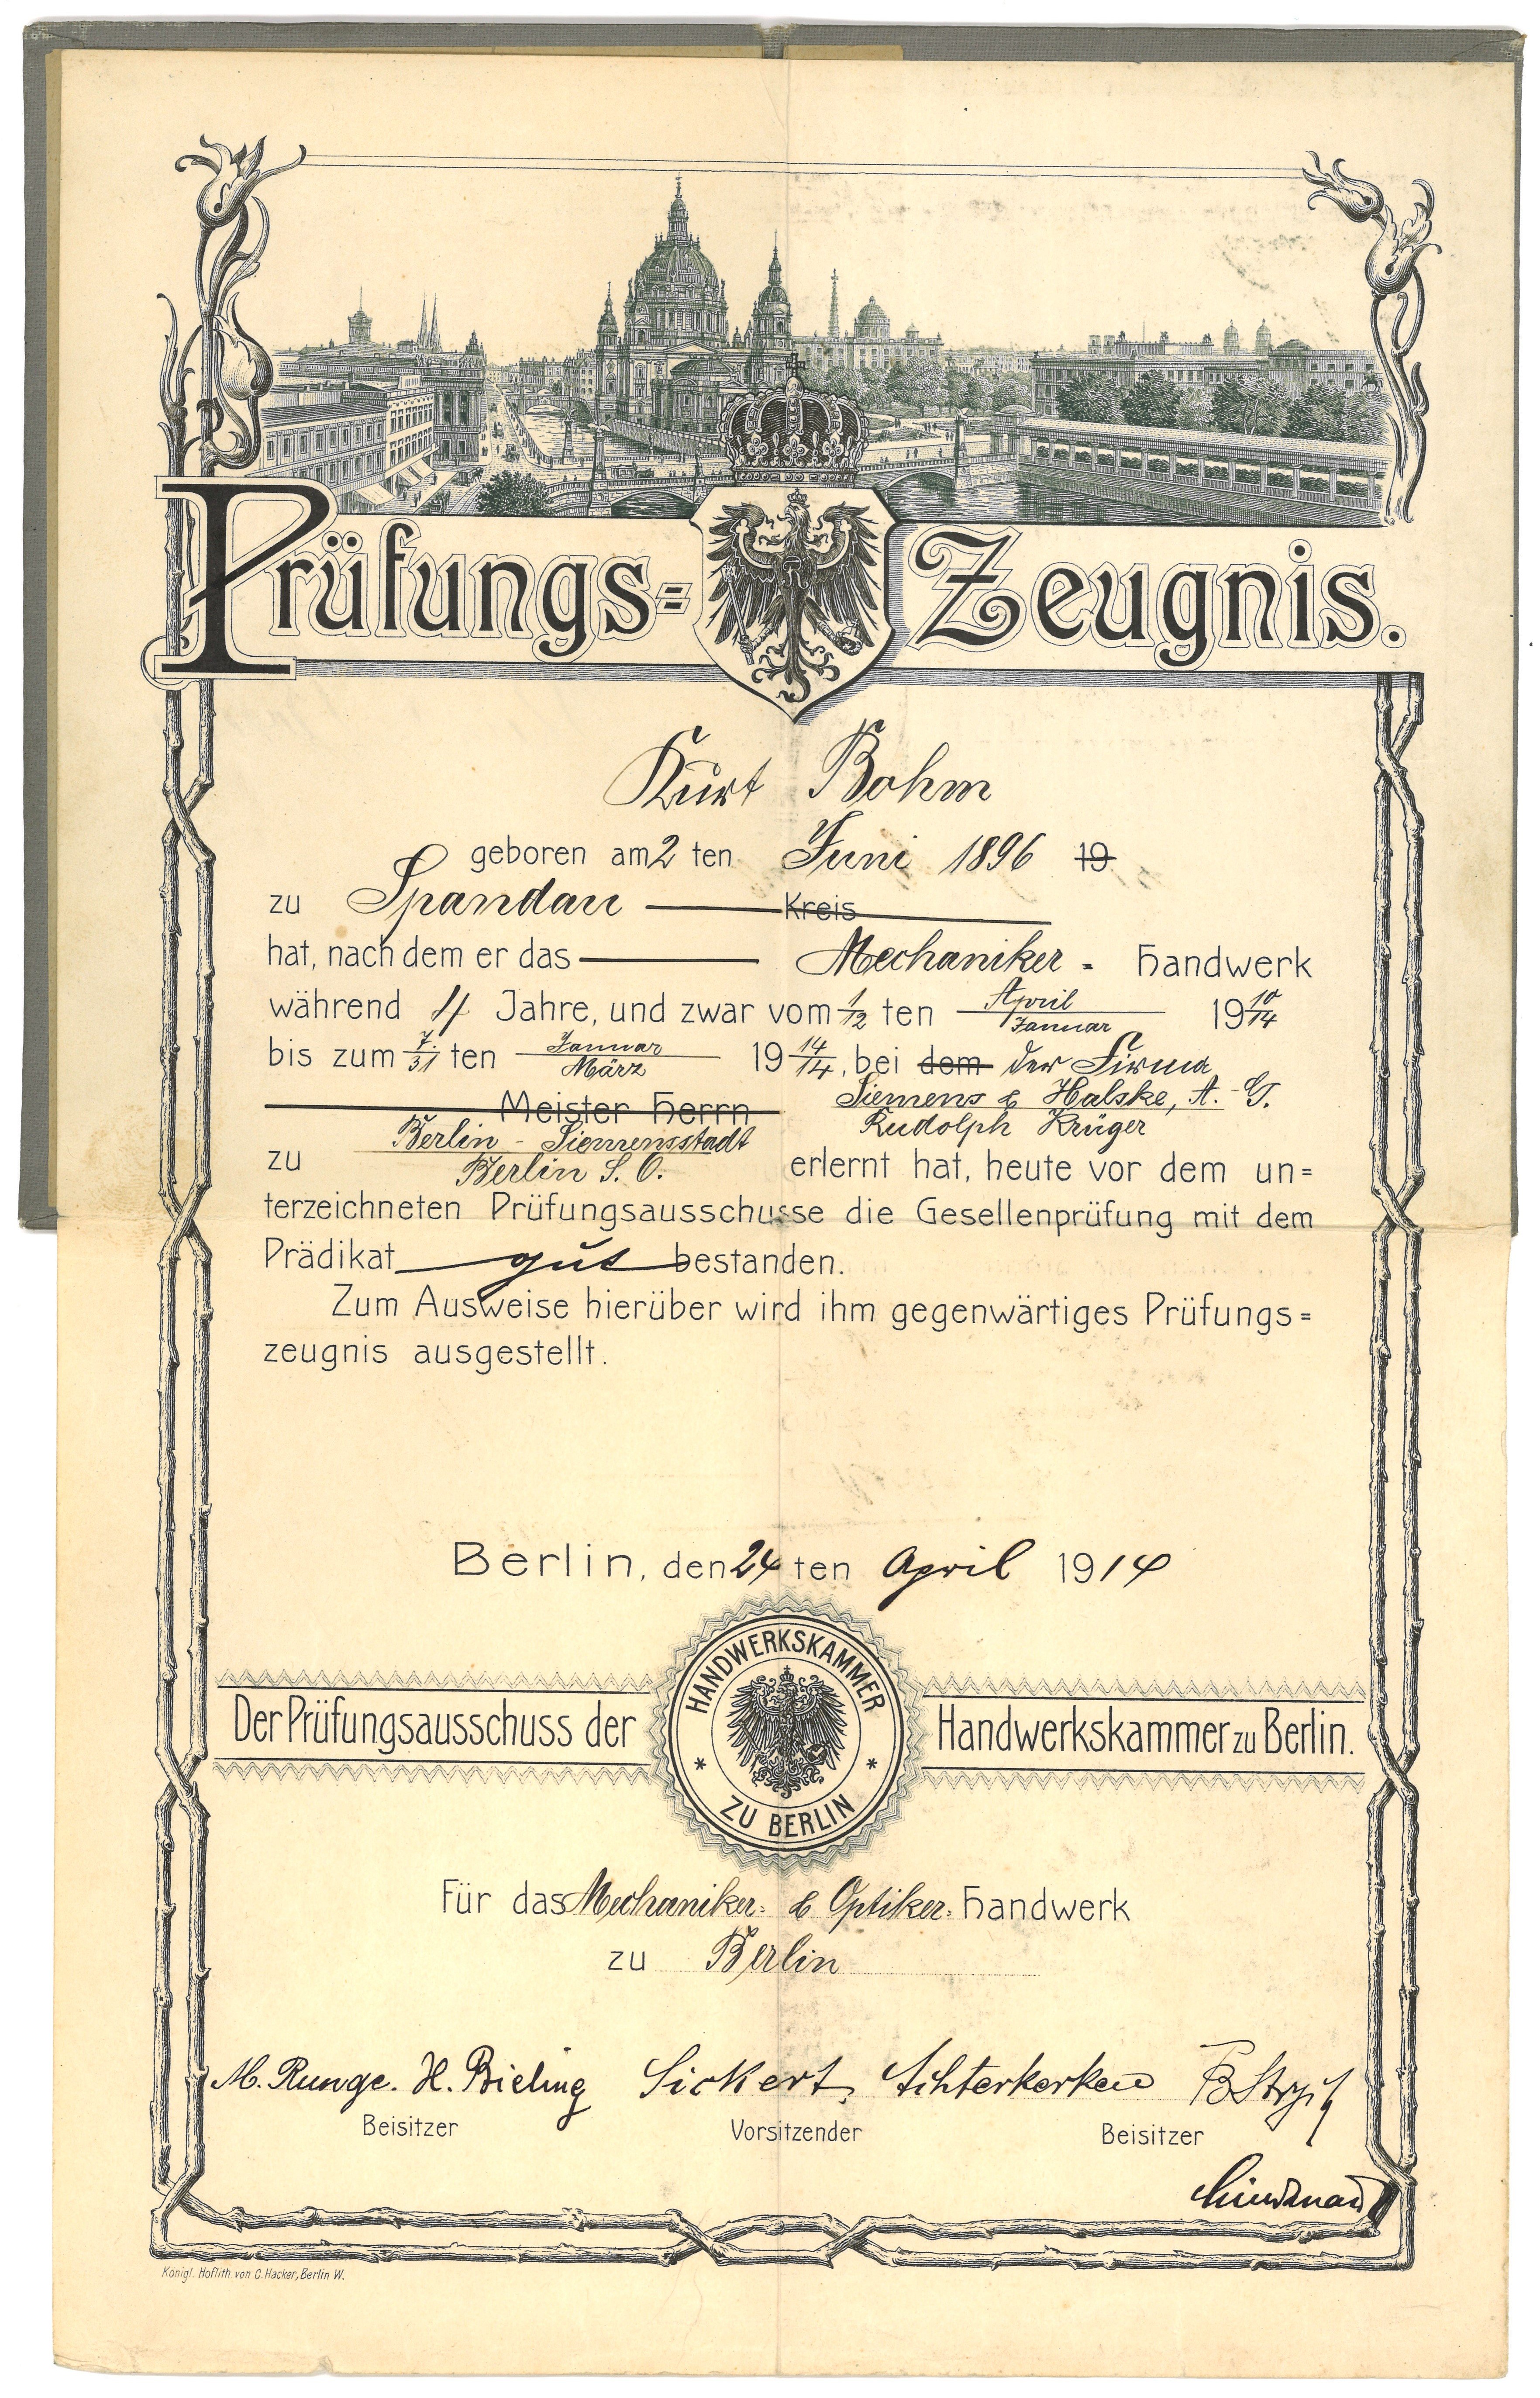 Lehrbrief für den Mechaniker Kurt Bohm in Berlin 1914 (Landesgeschichtliche Vereinigung für die Mark Brandenburg e.V., Archiv CC BY)